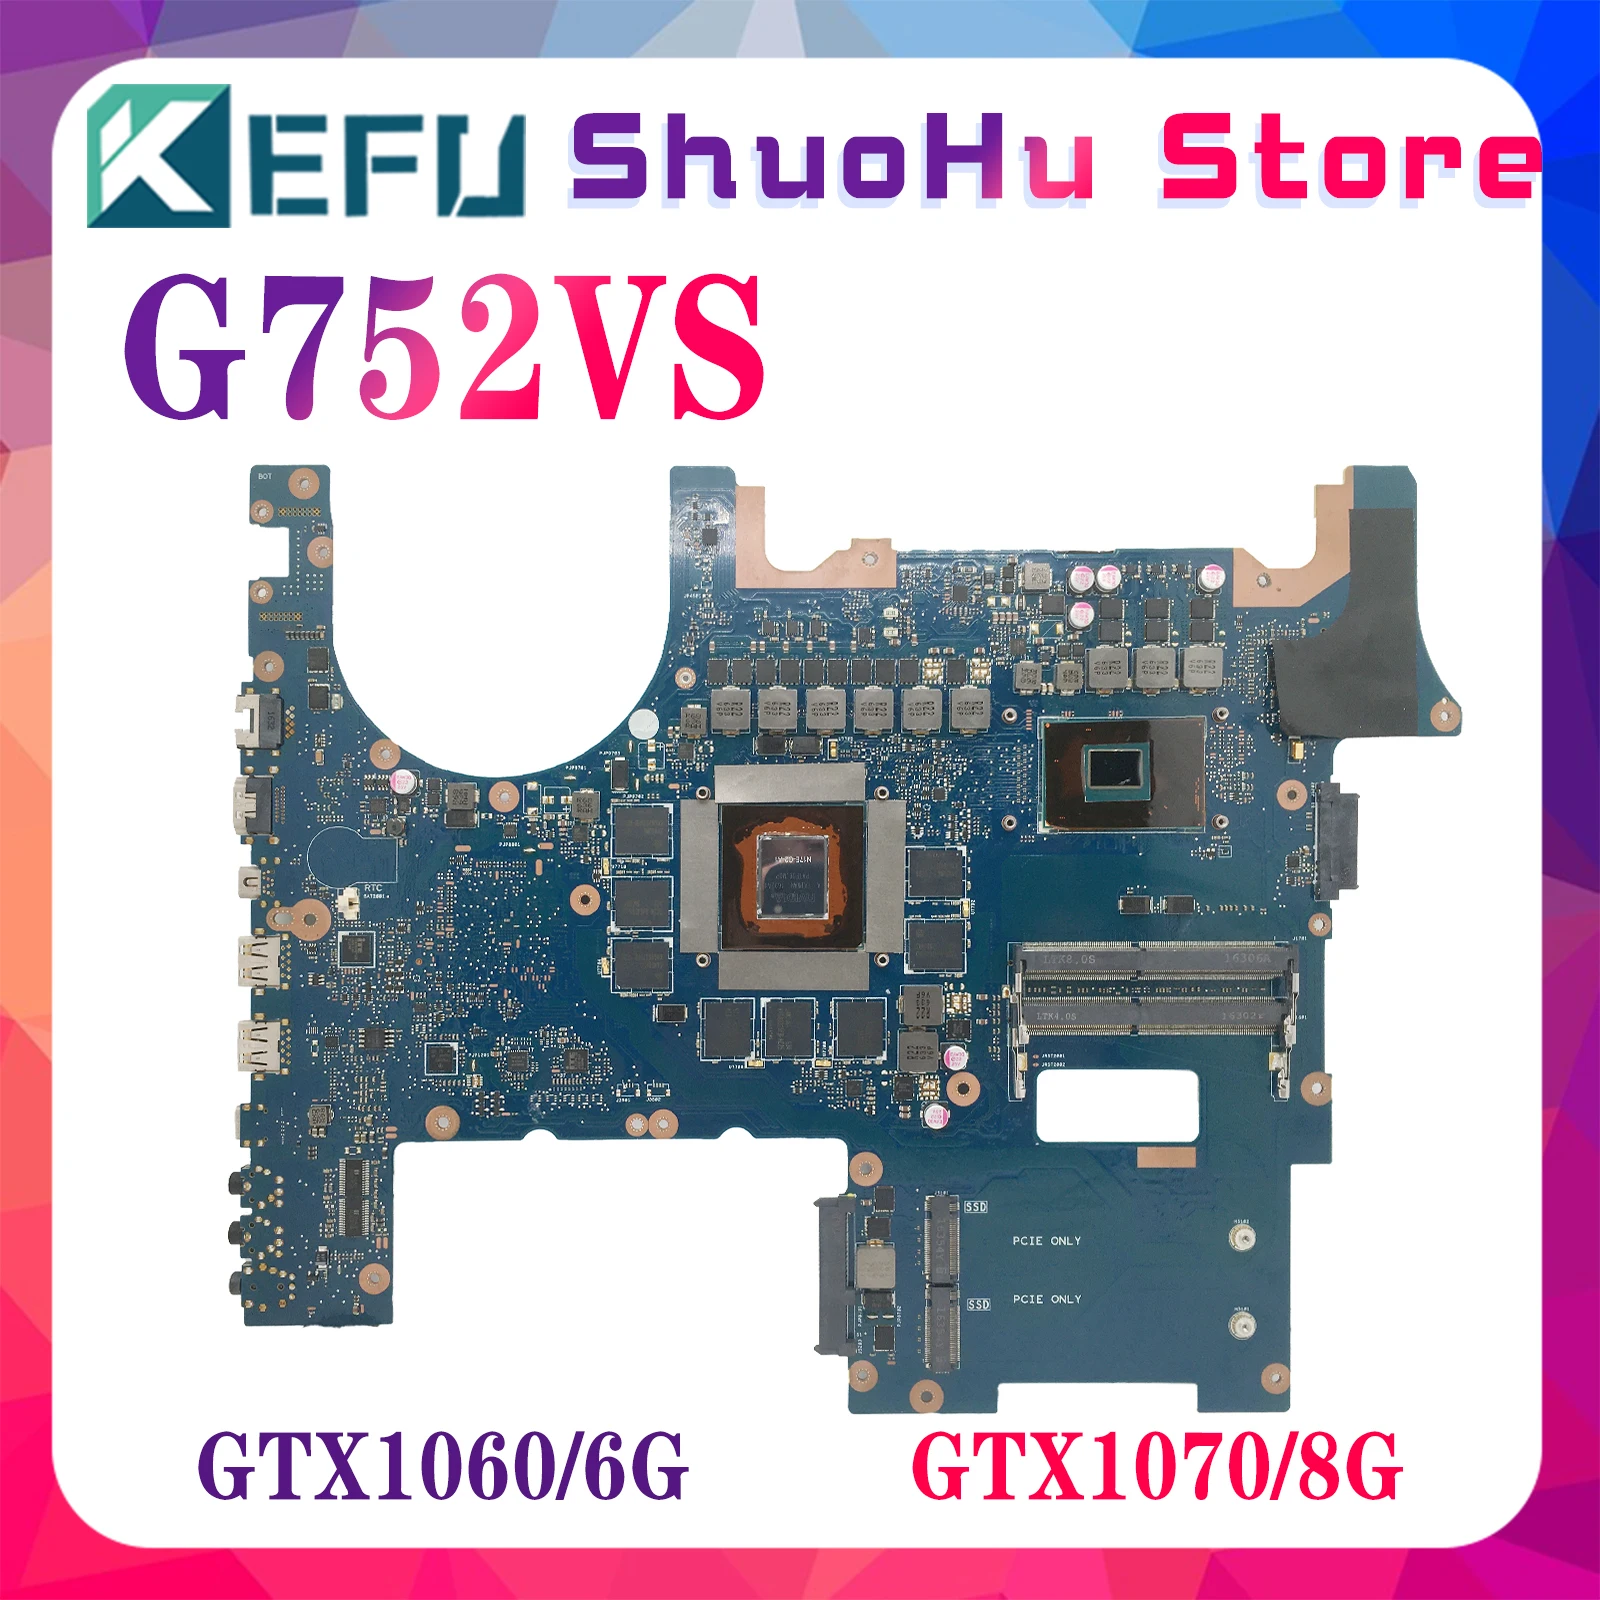 

KEFU Notebook Mainboard For ASUS ROG G752VS G752VM G752VSK Laptop Motherboard I7-7700HQ I7-6820HK GTX1060/6G GTX1070/8G DDR4